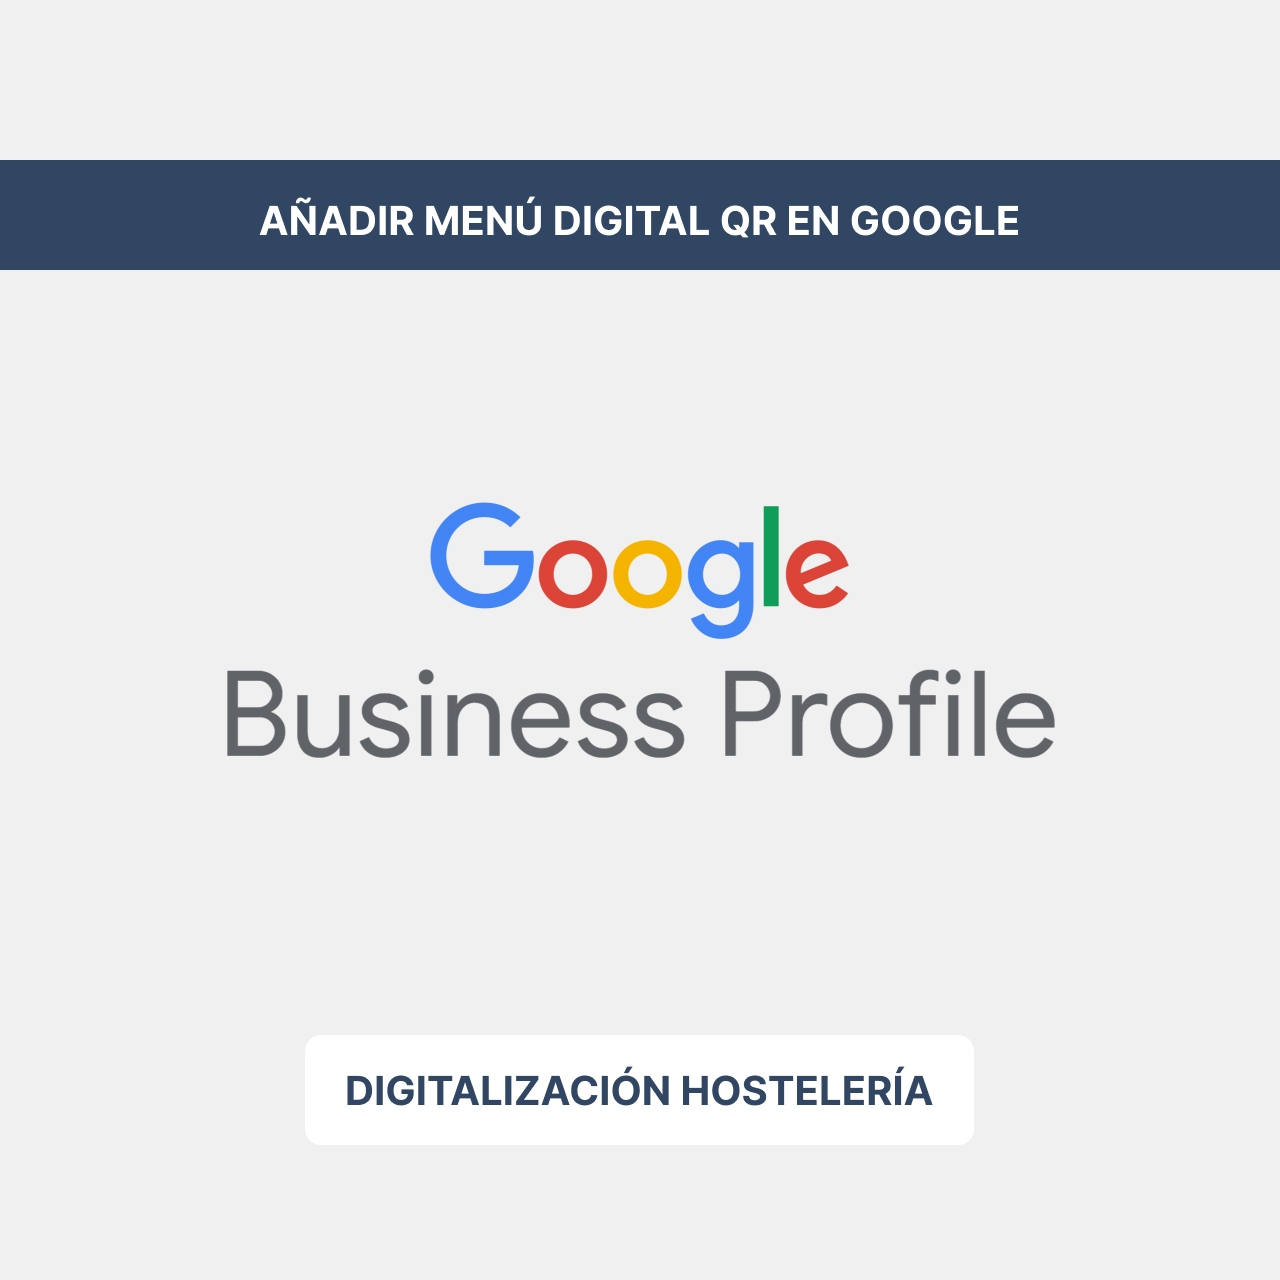 Cómo añadir la carta de mi restaurante a Google Business Profile